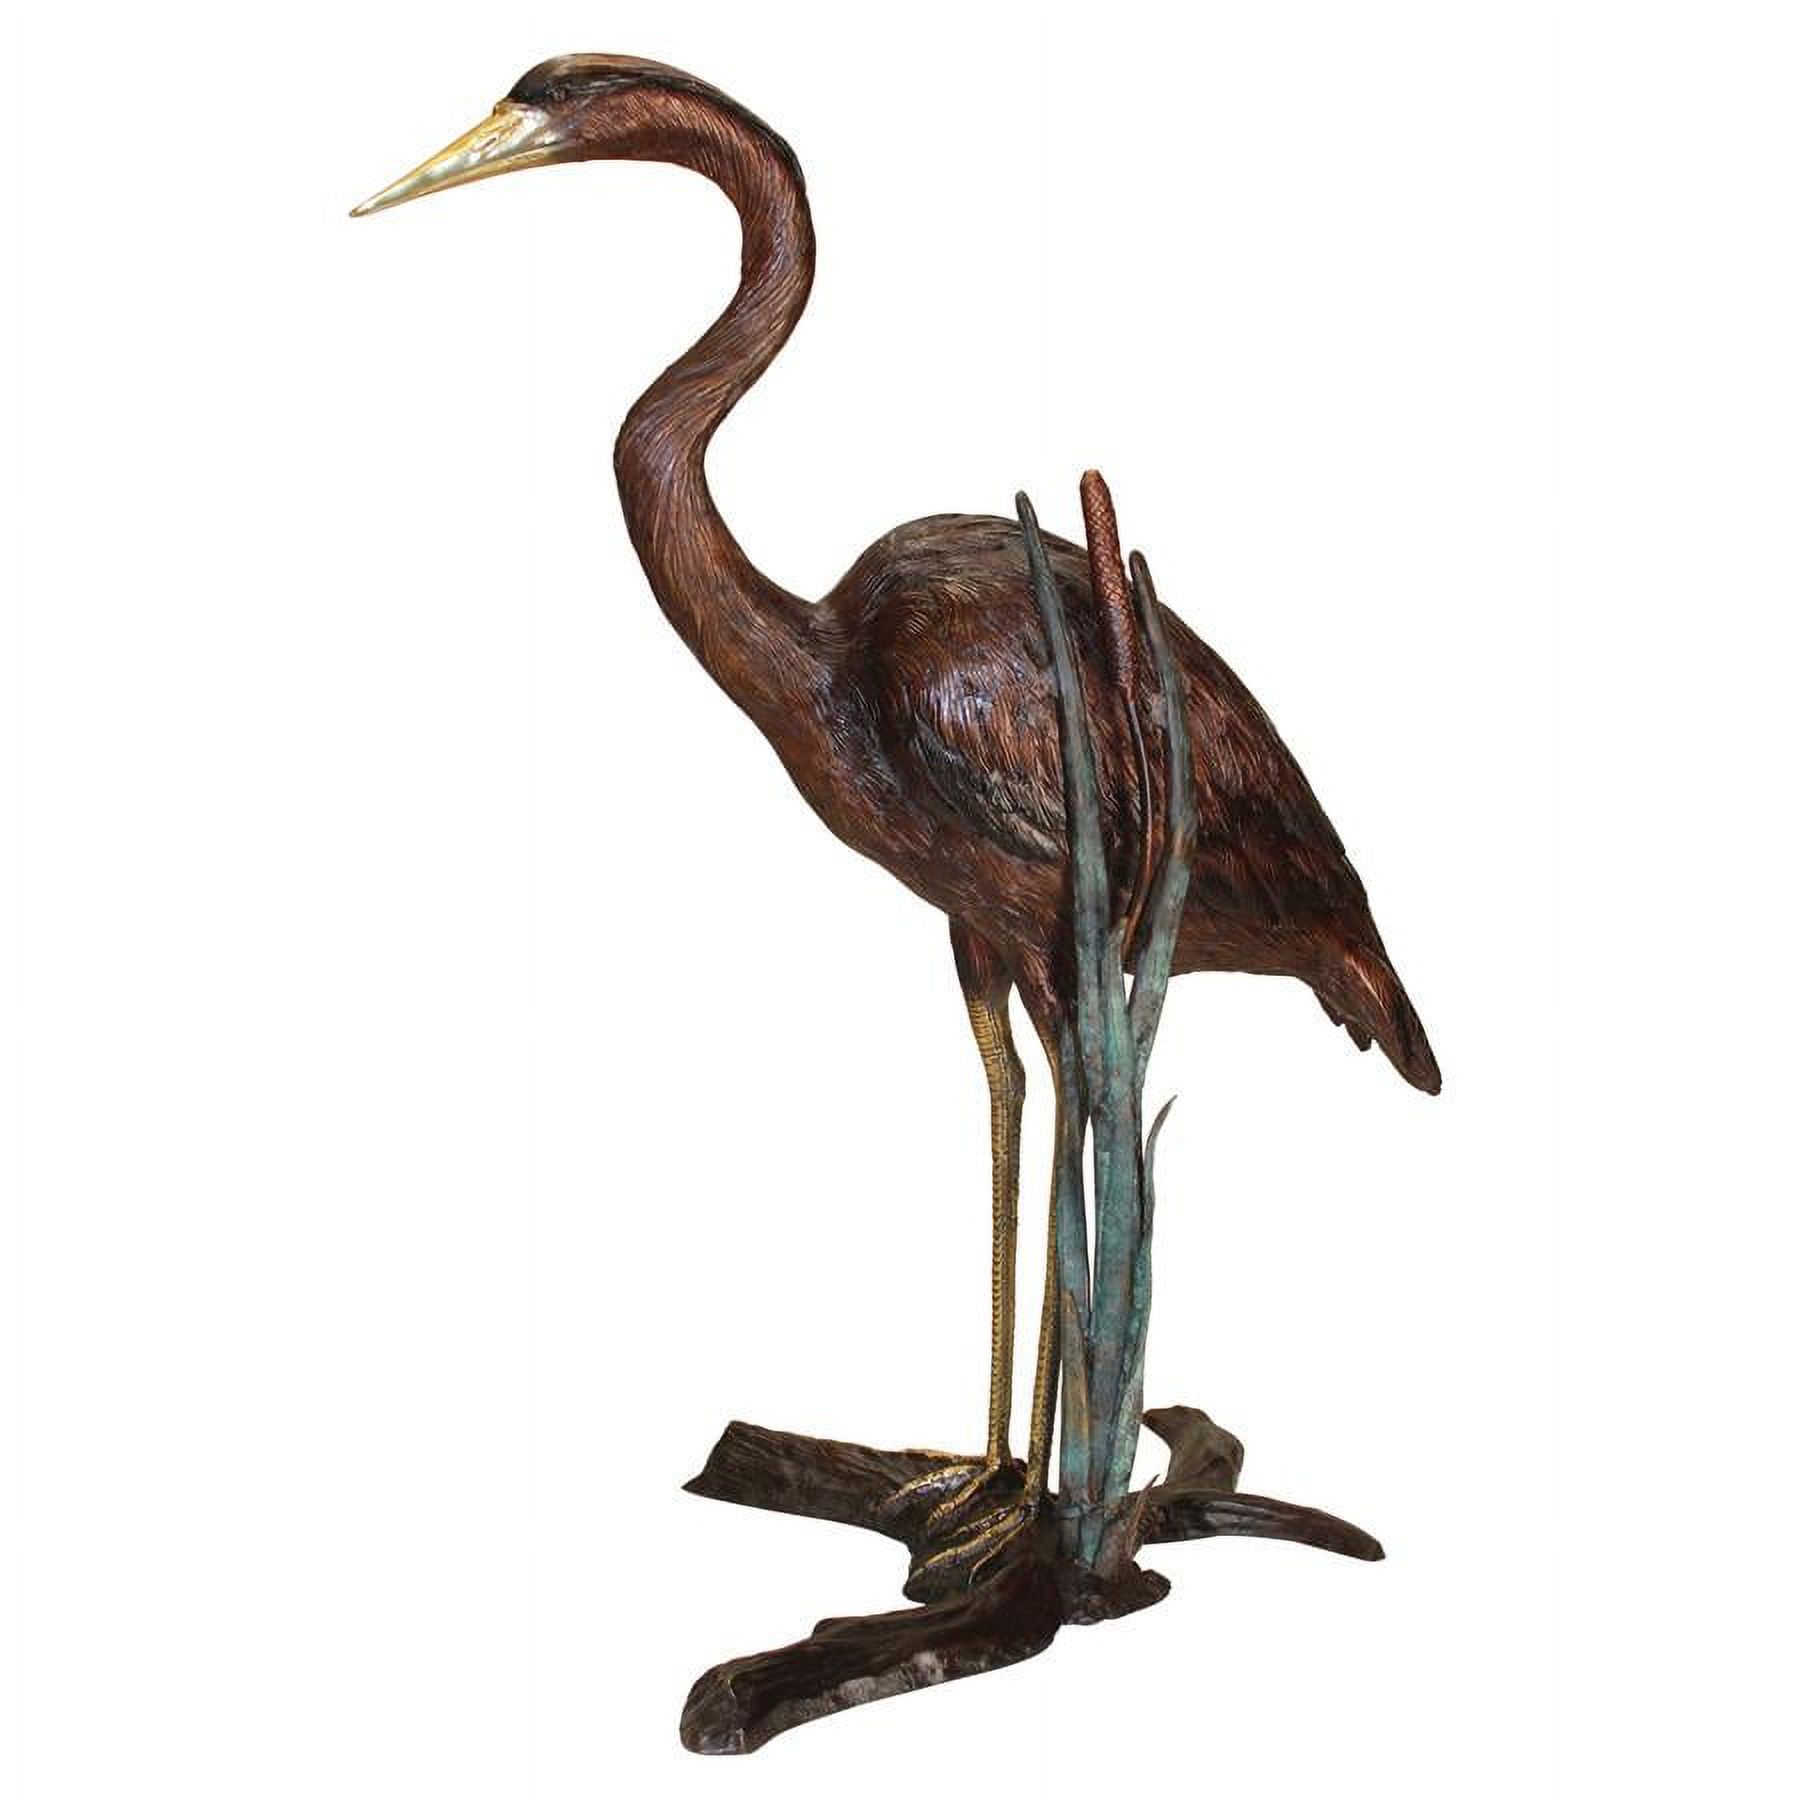 Design Toscano Standing Heron in Reeds Cast Bronze Garden Statue - image 2 of 2